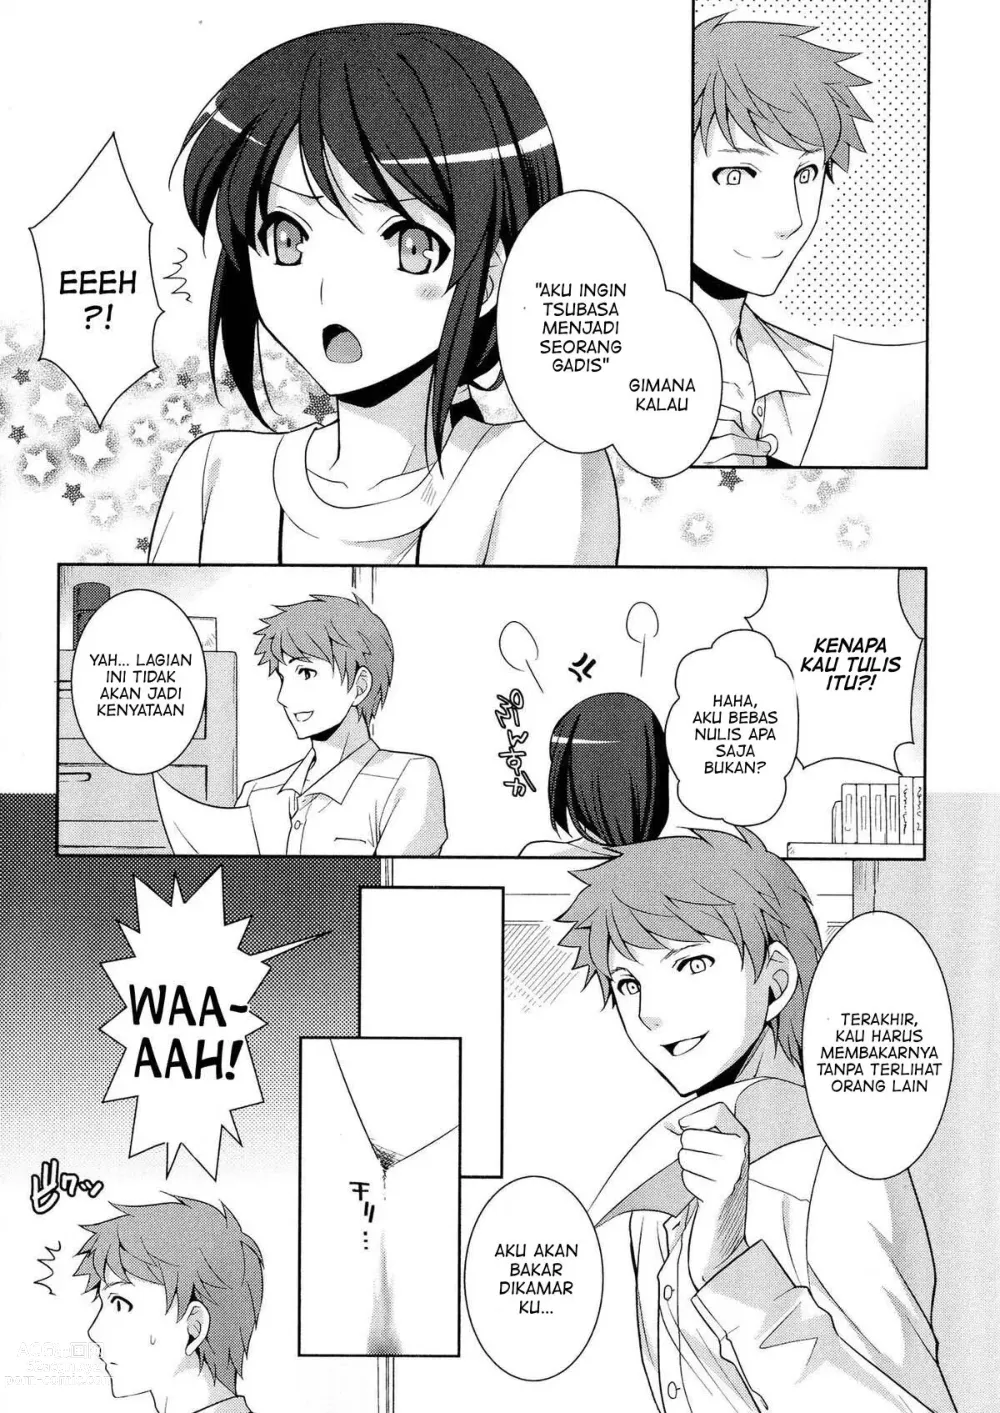 Page 3 of manga Omajinai wa Hodohodo ni!